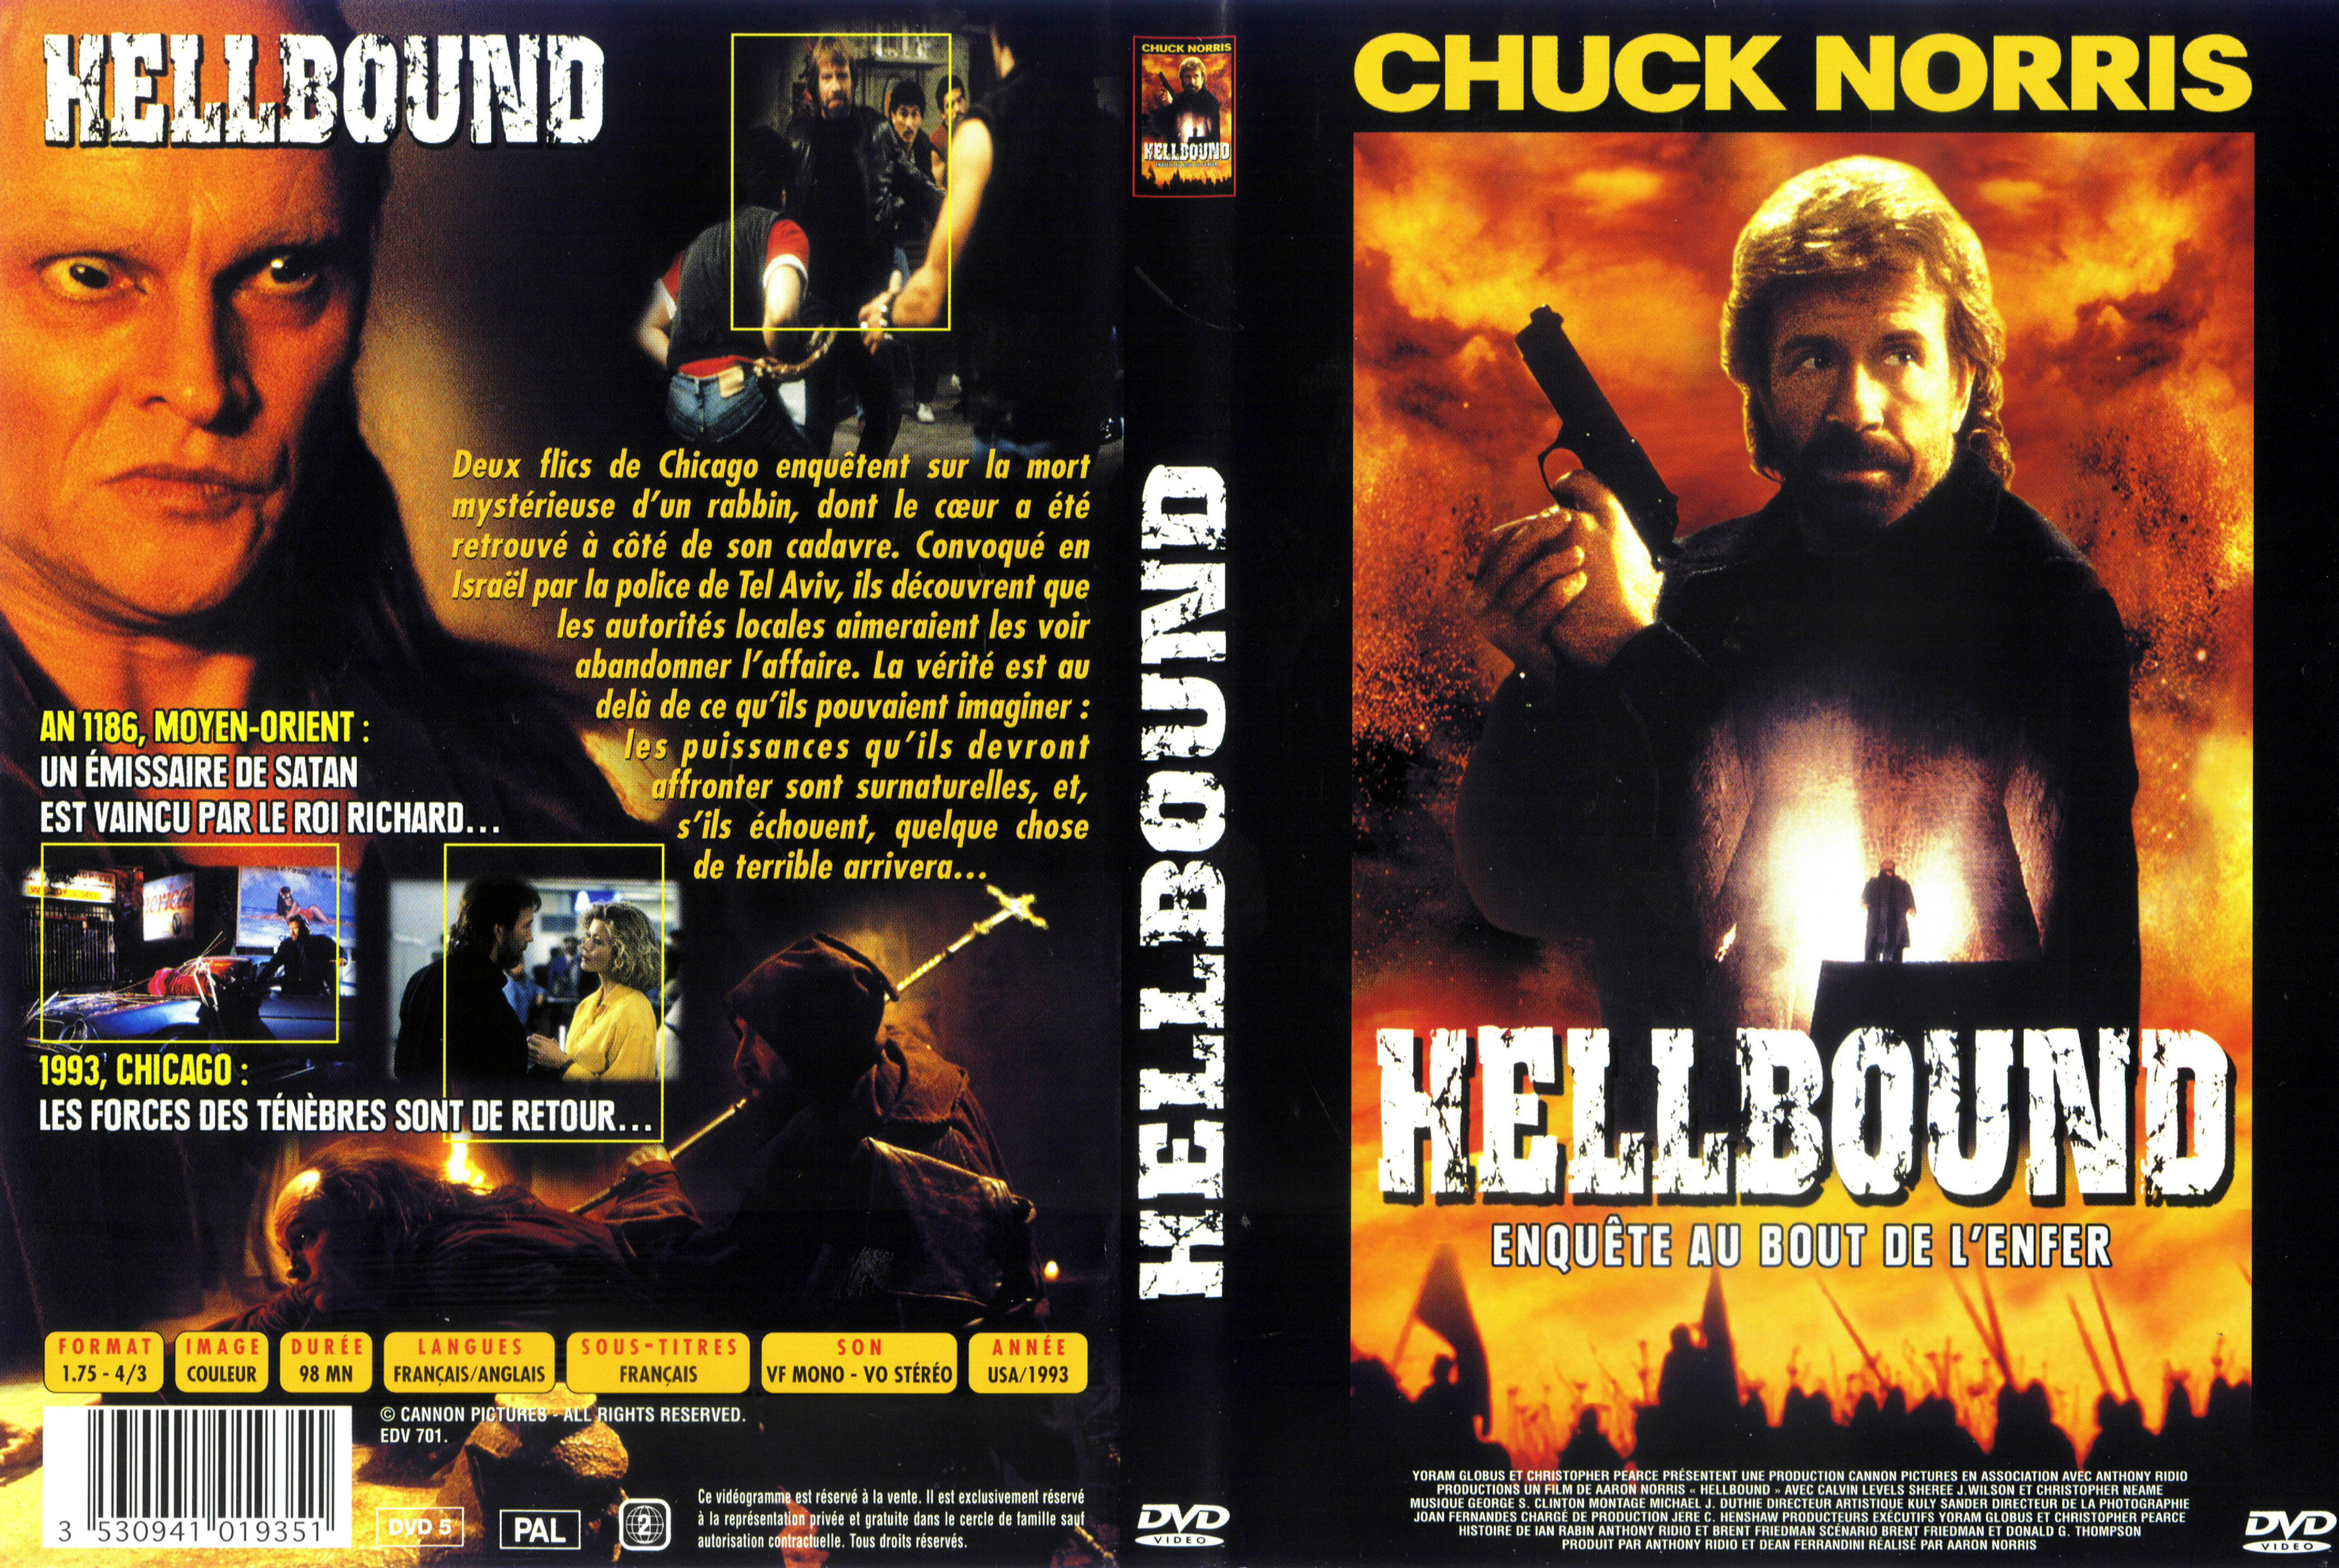 Jaquette DVD Hellbound v2